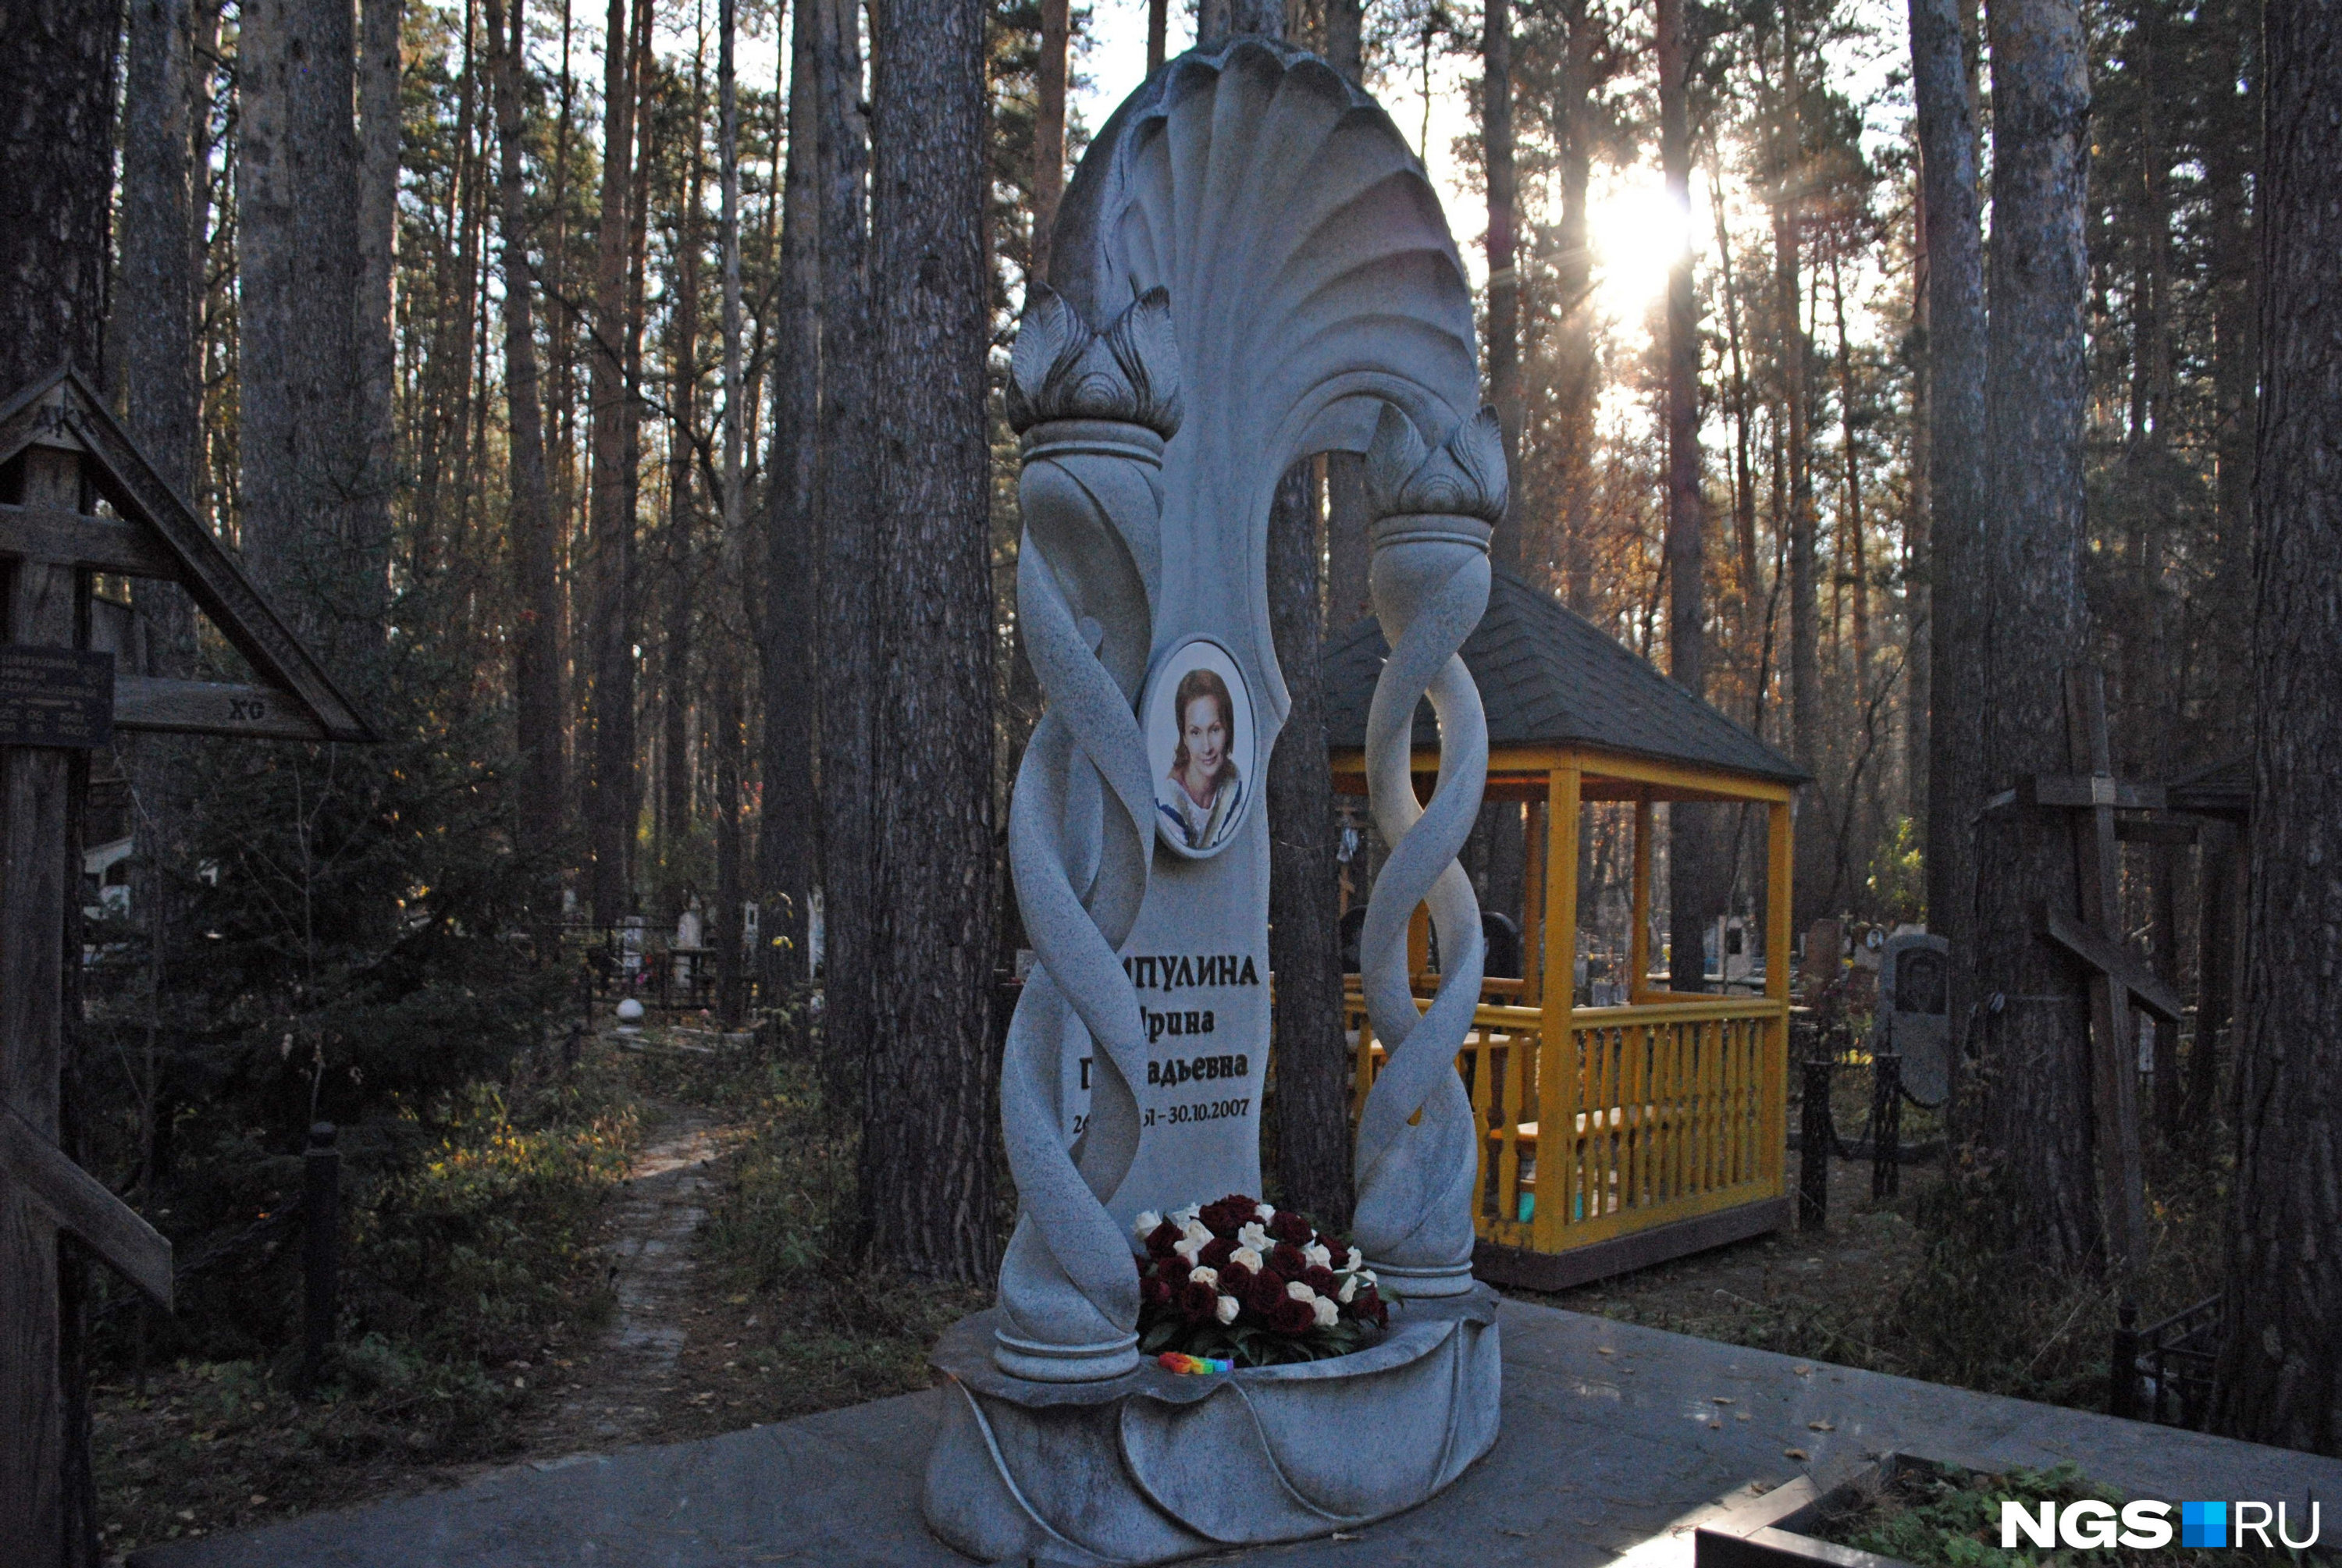 Как утверждает Лидия Королёва, белый камень, из которого сделан памятник предпринимательницы Ирины Шипулиной, быстро разрушается в условиях Сибири